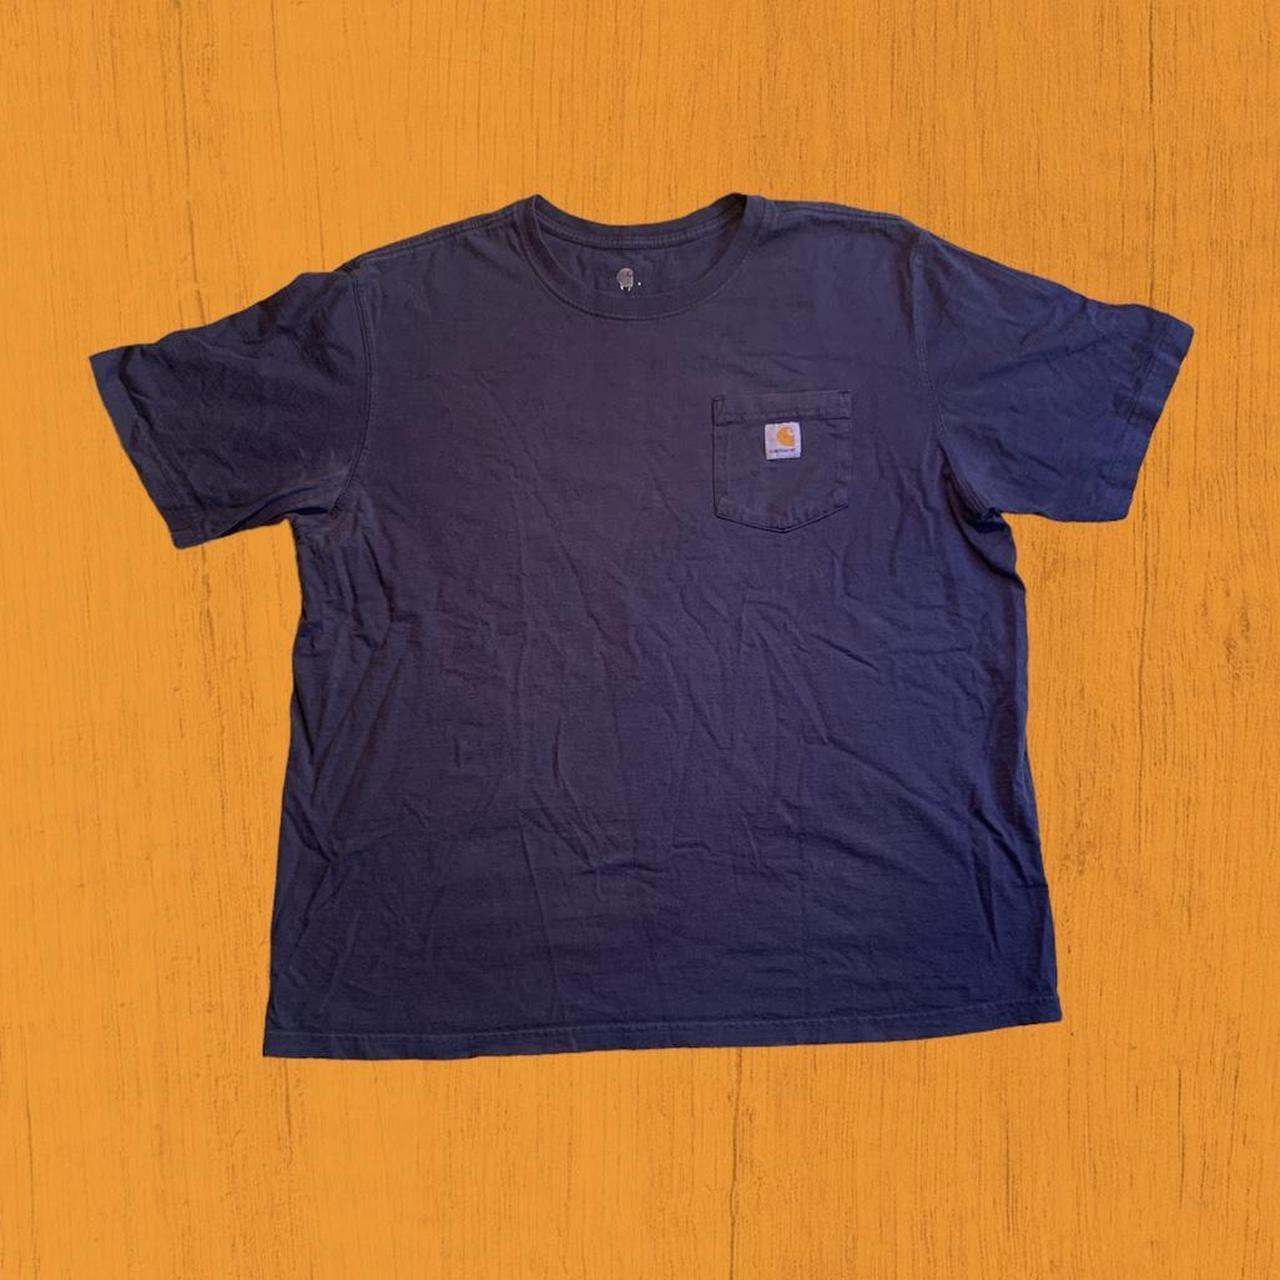 Vintage 2000s Carhartt Navy Blue Pocket T-Shirt... - Depop